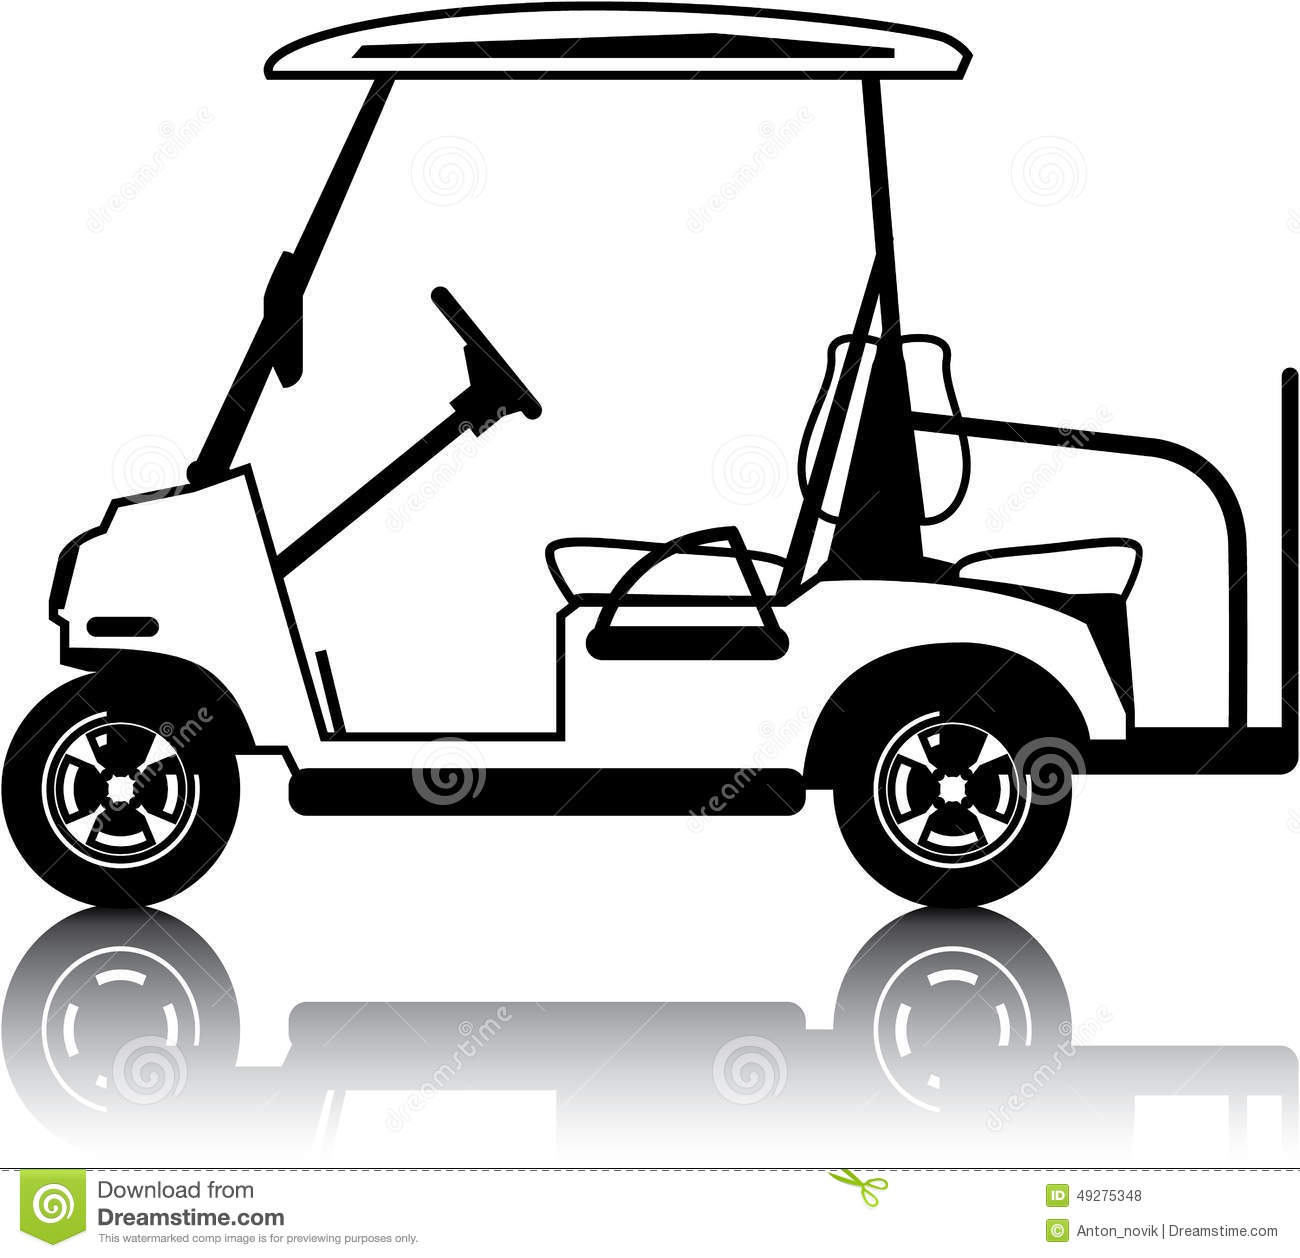 Golf Cart Clip Art At Clker C